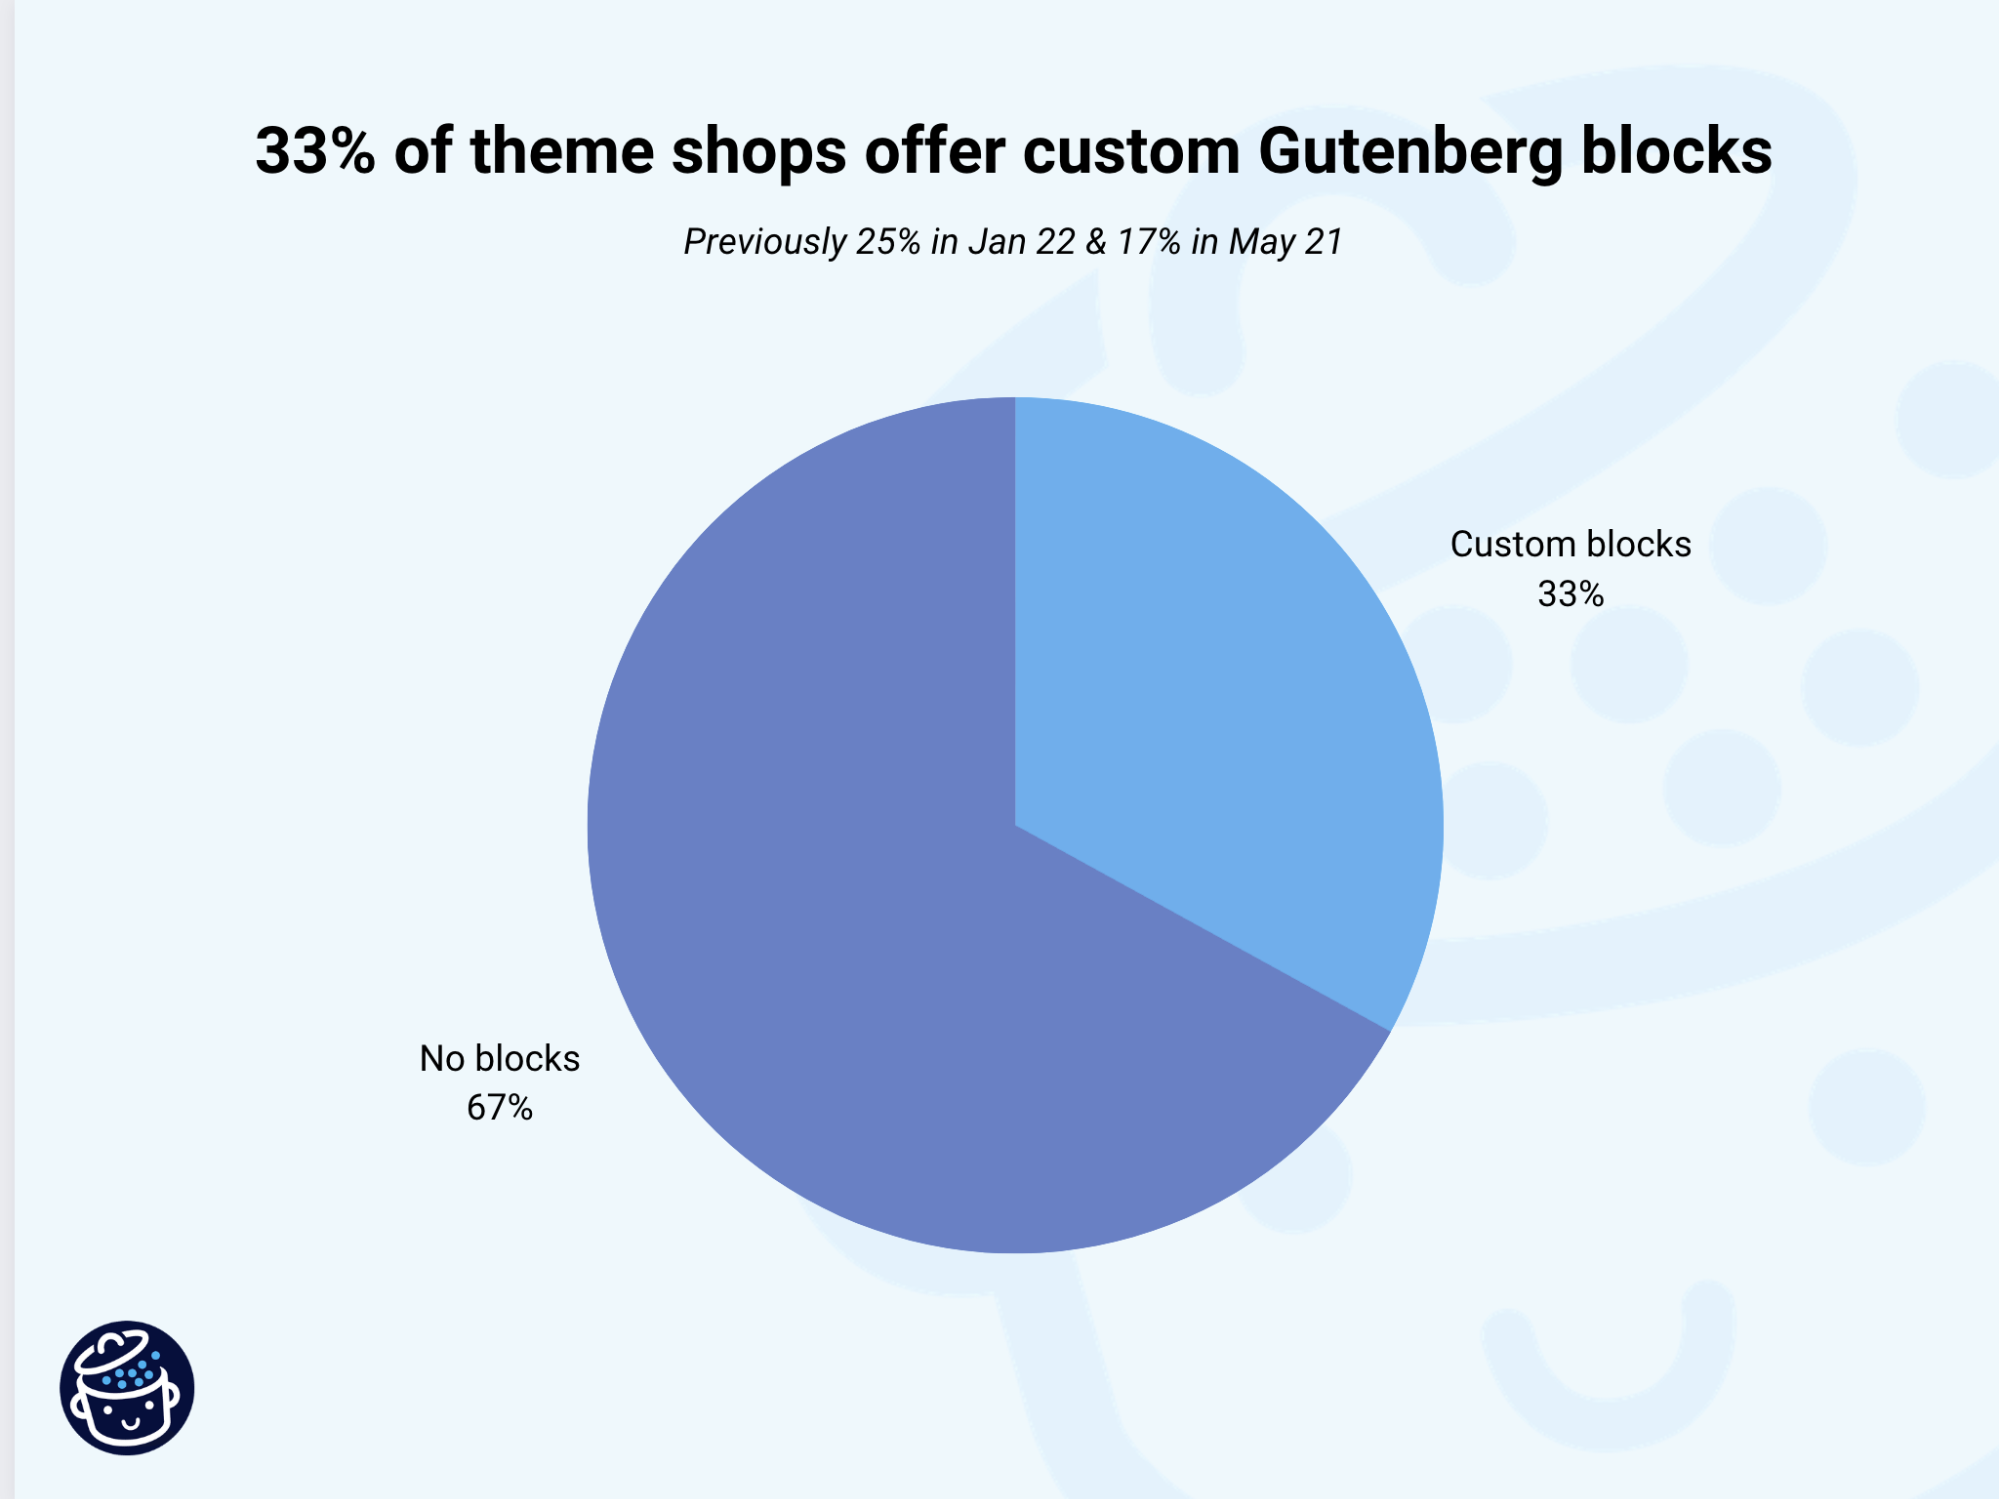 Theme shops offering custom Gutenberg blocks.